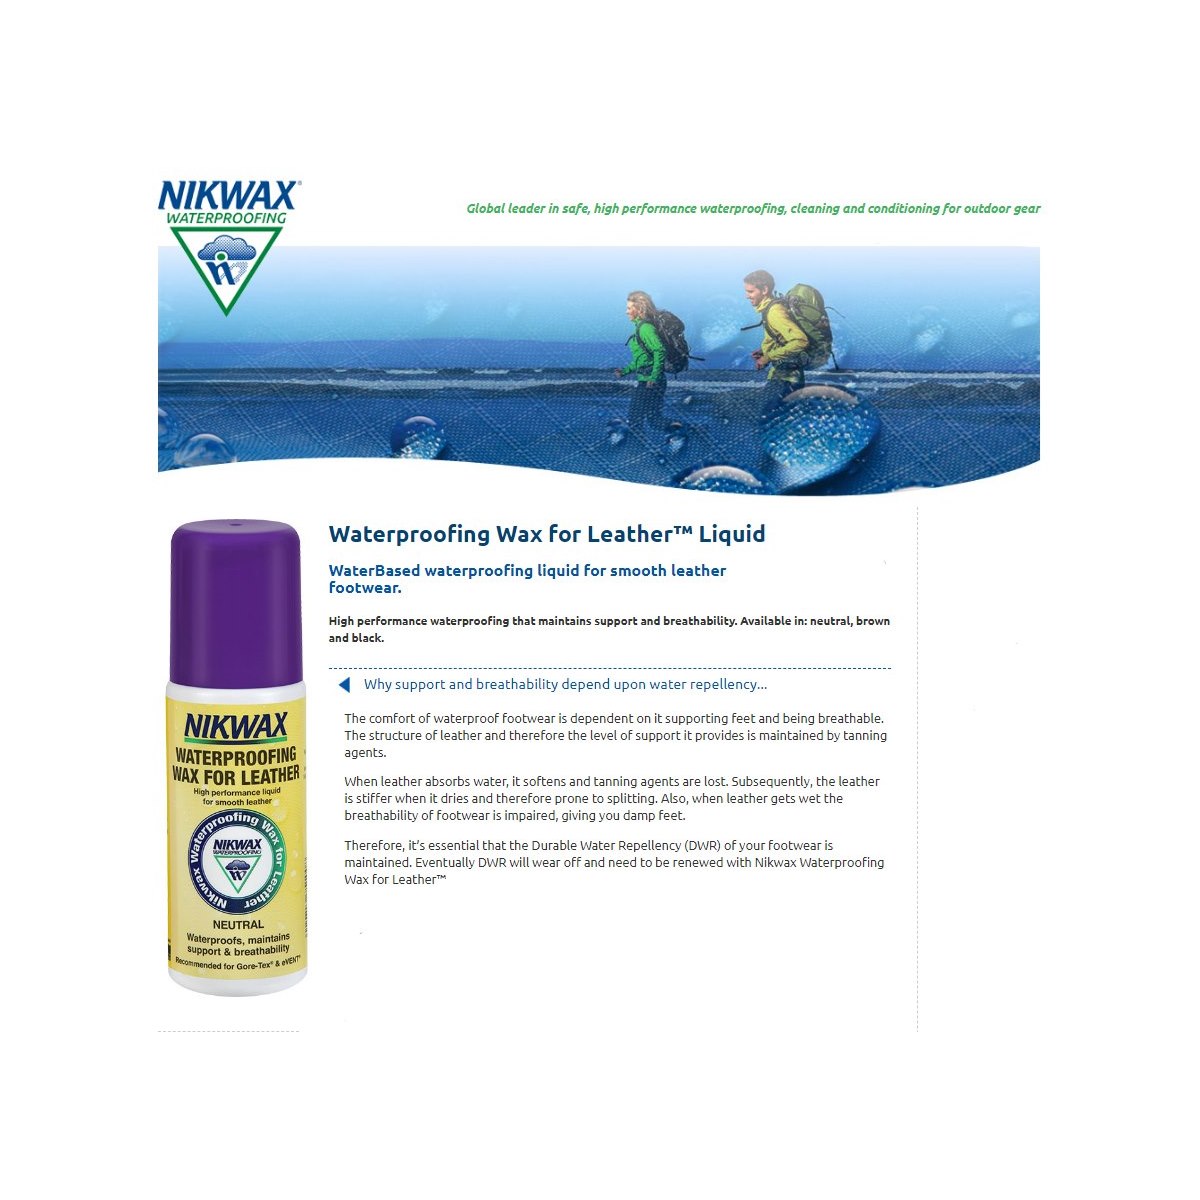 Nikwax Waterproofing Wax